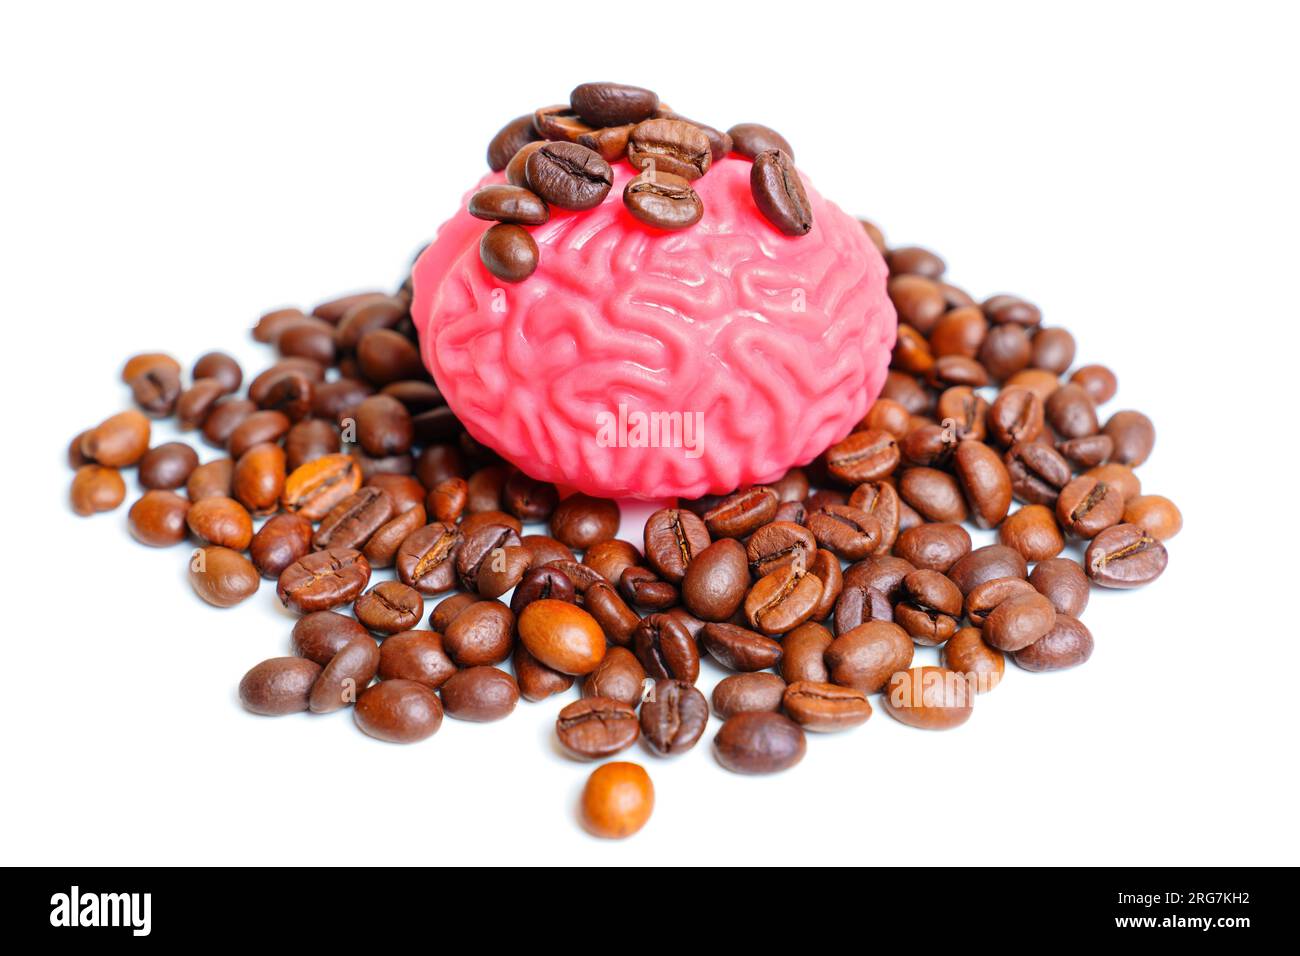 Rosafarbenes, gelee ähnliches menschliches Gehirnmodell in einem Haufen gerösteter Kaffeebohnen, isoliert auf weißem Hintergrund. Kaffee als mentale Leistungssteigerung und Stockfoto